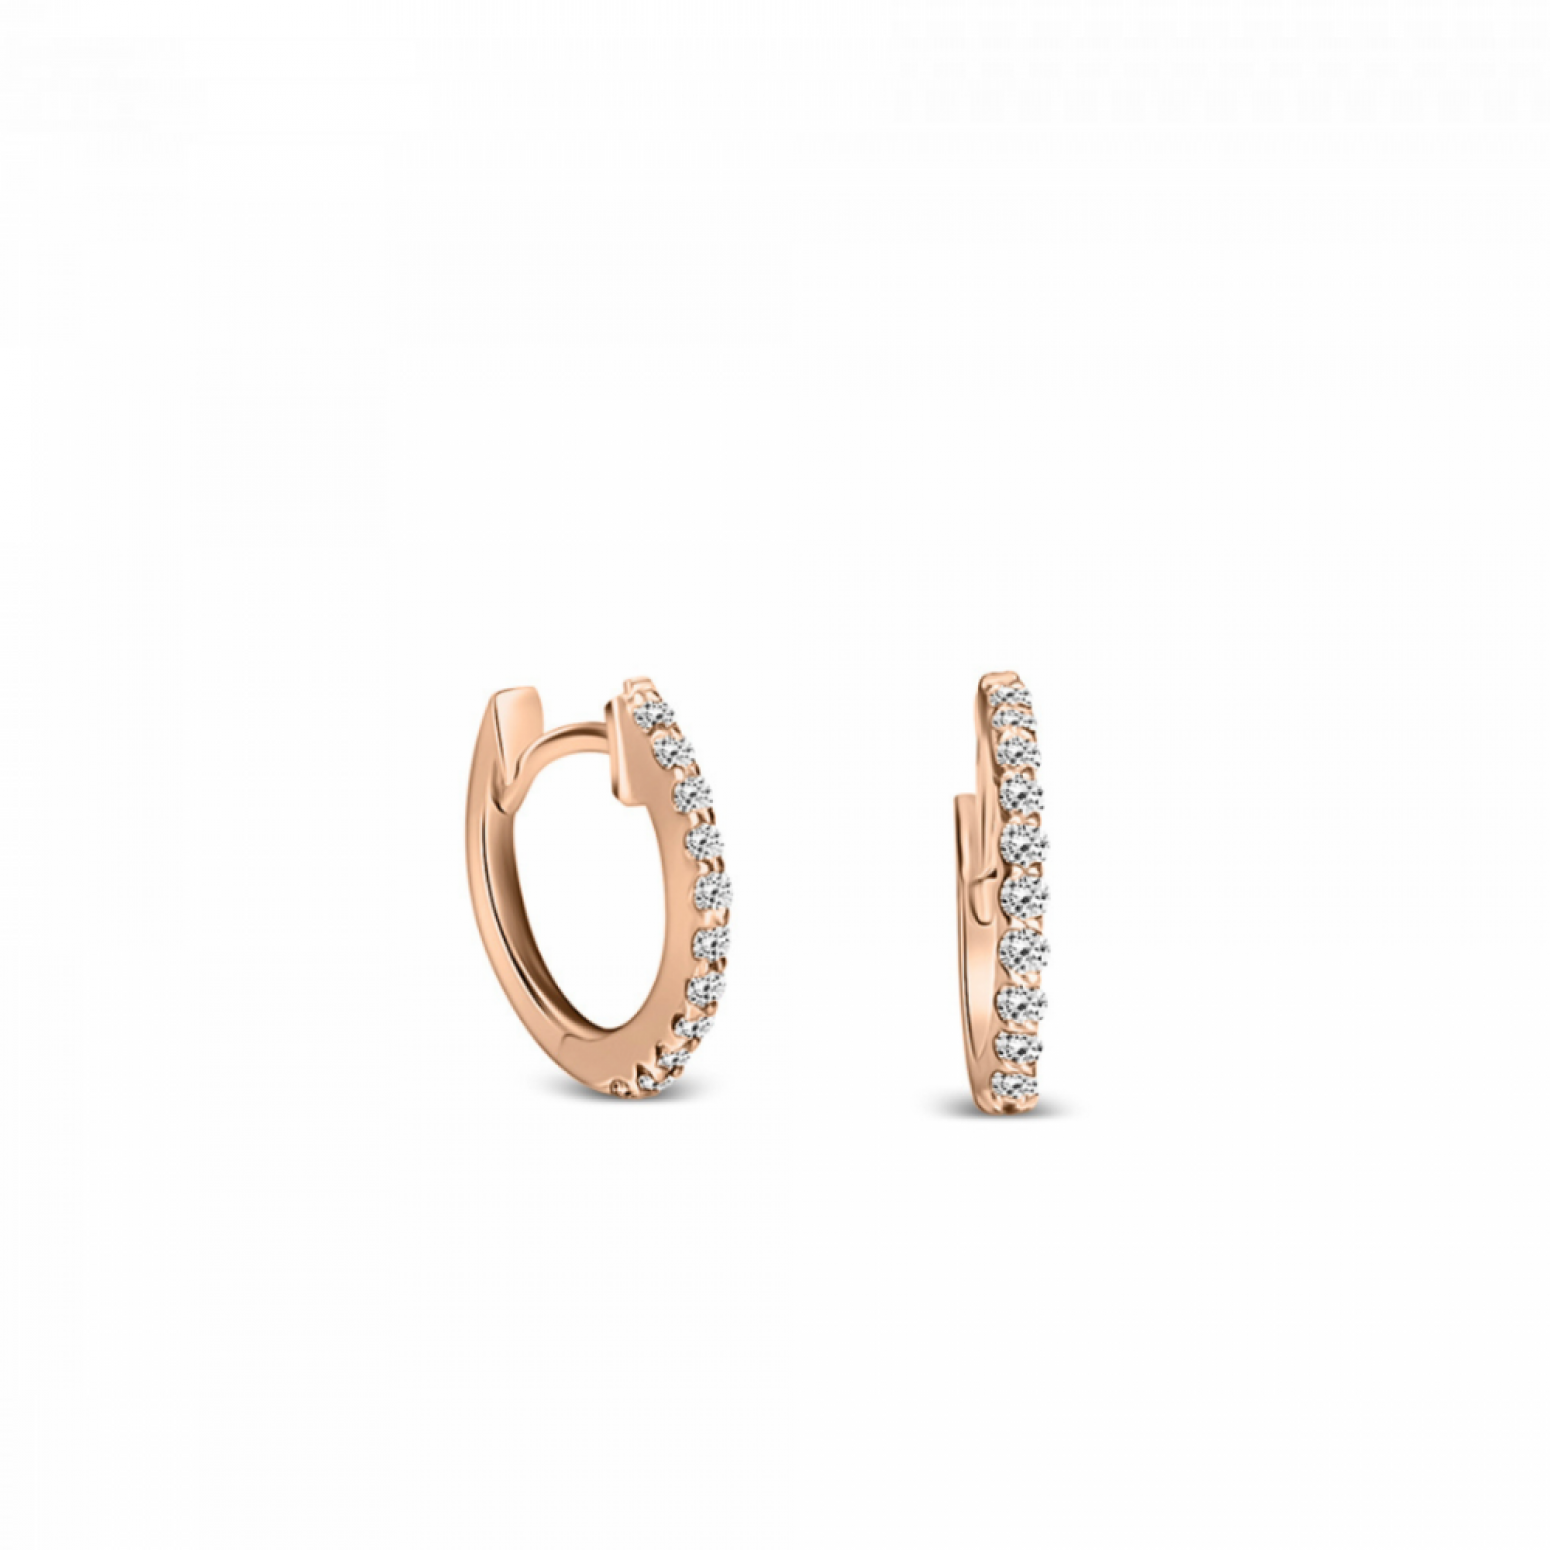 Hoop earrings, 18K pink gold with diamonds 0.12ct, VS1, H, sk3933 EARRINGS Κοσμηματα - chrilia.gr